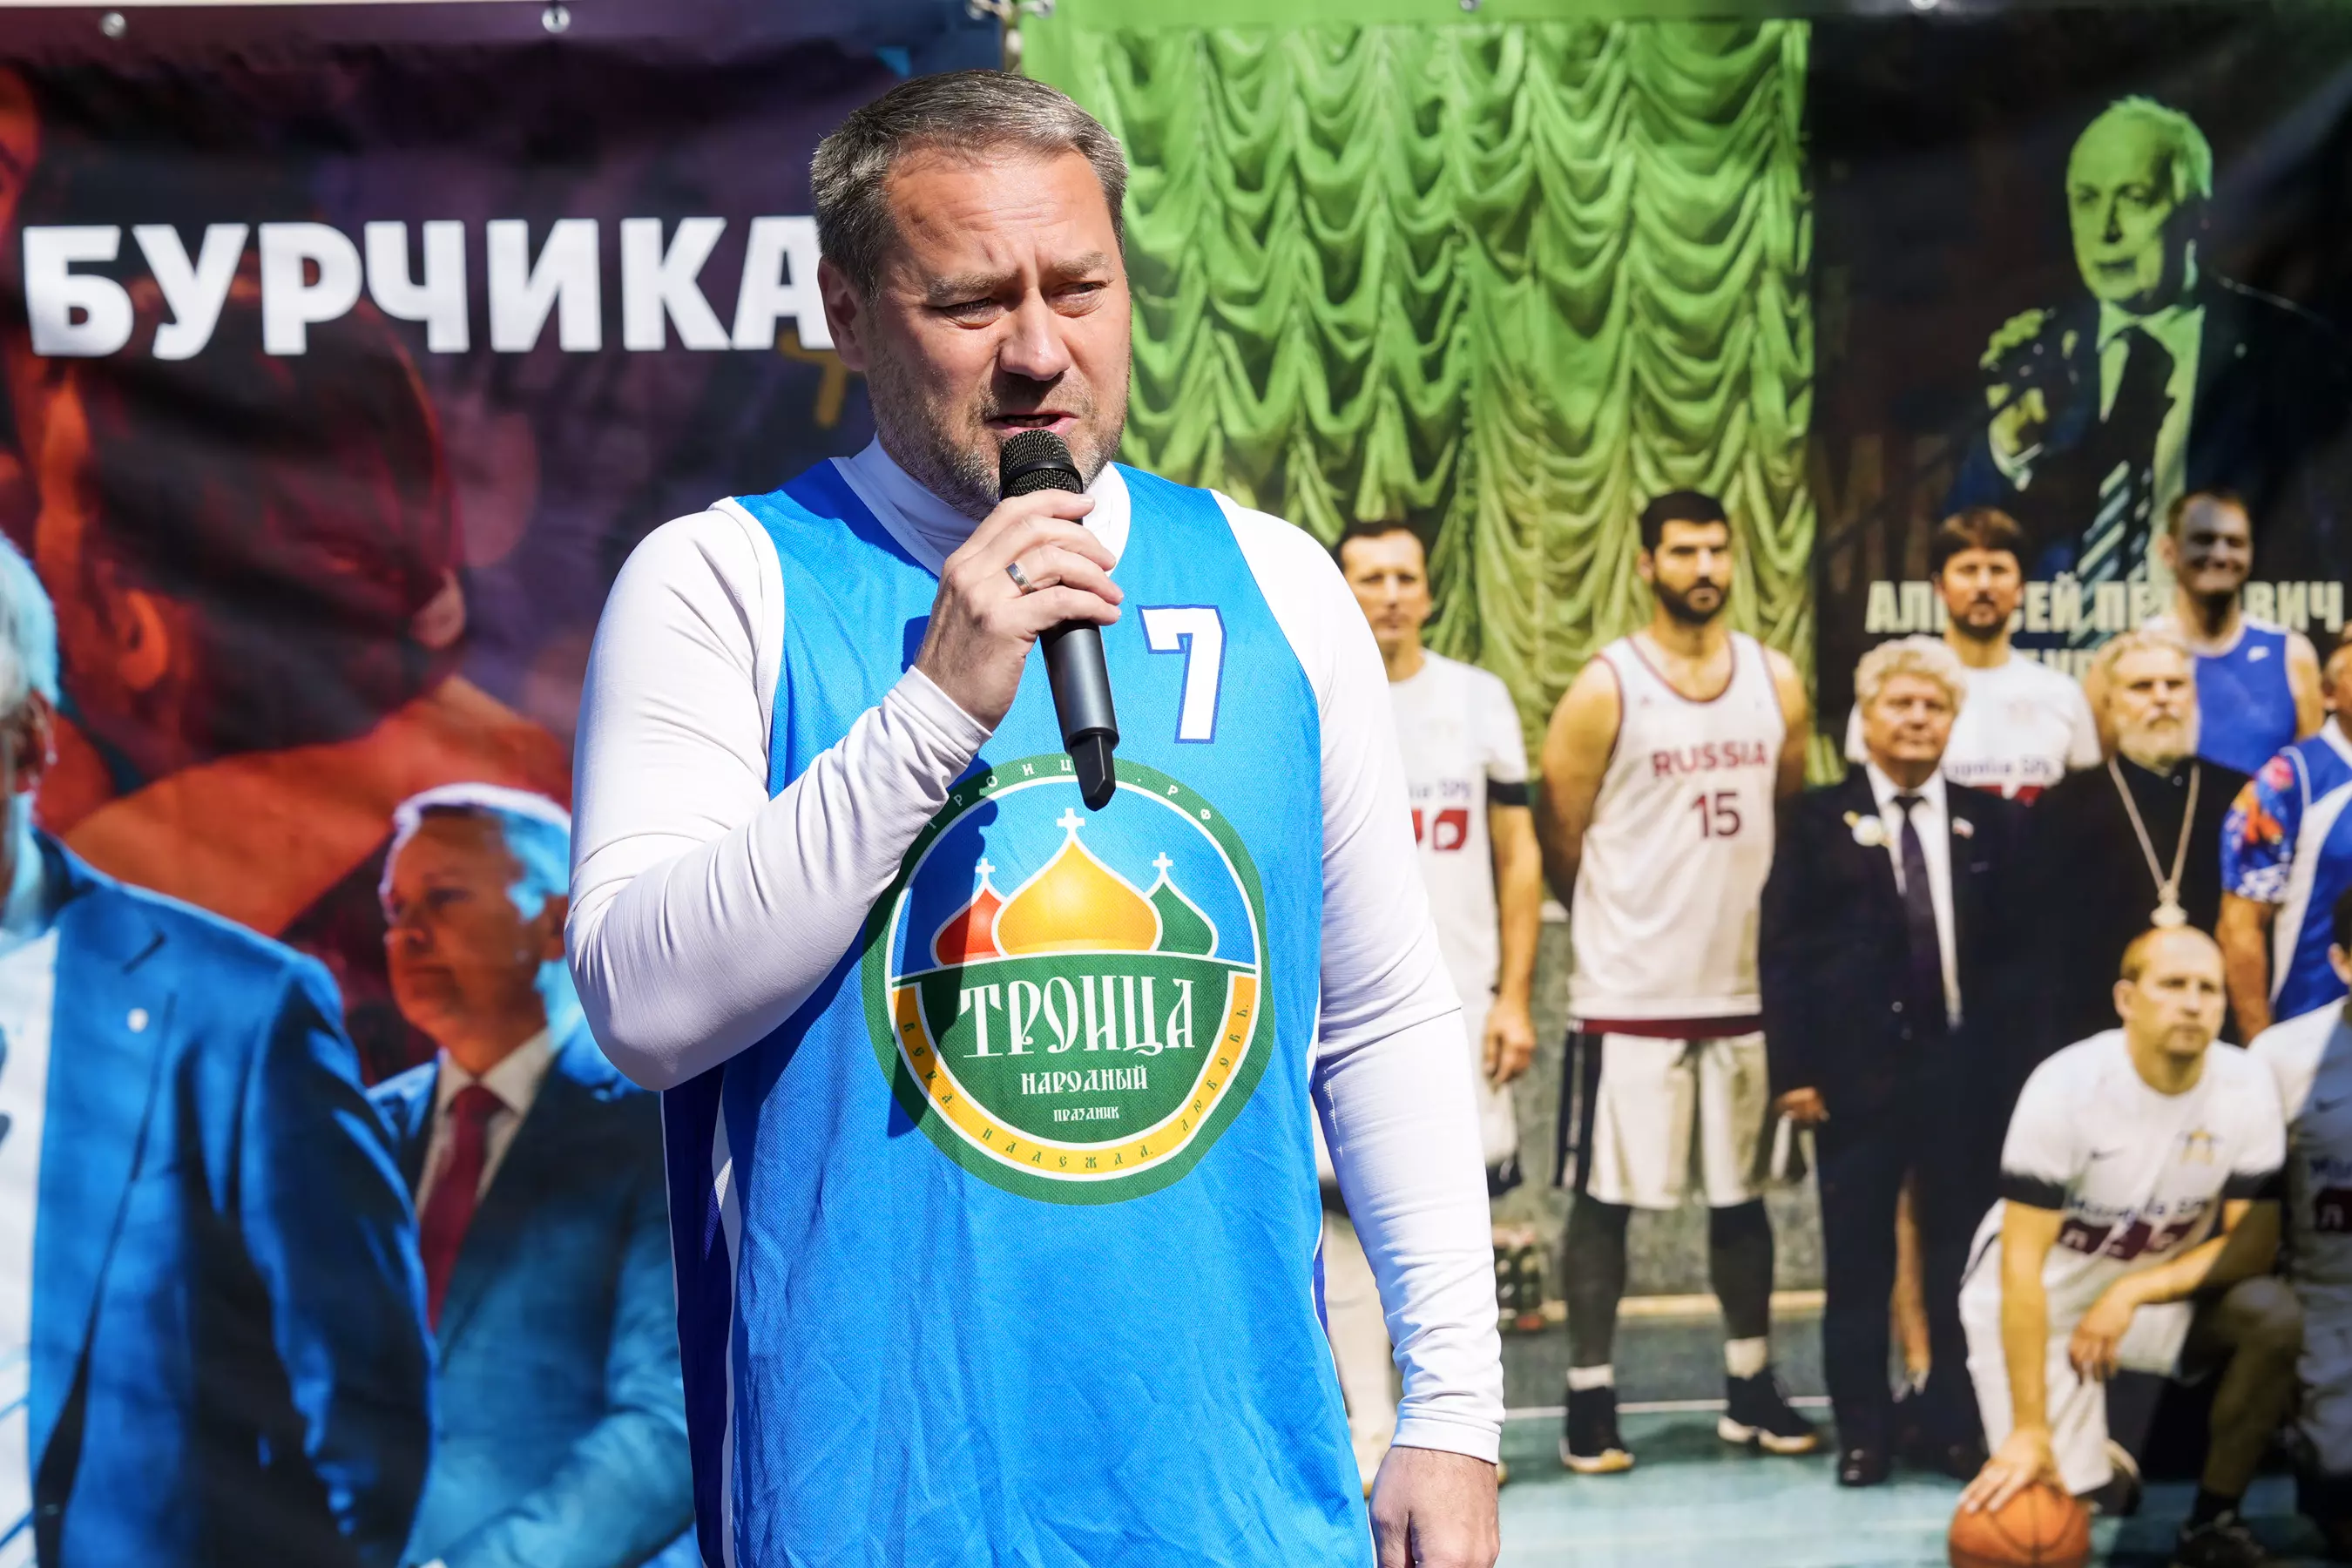 В Сестрорецке провели баскетбольный матч памяти Алексея Бурчика